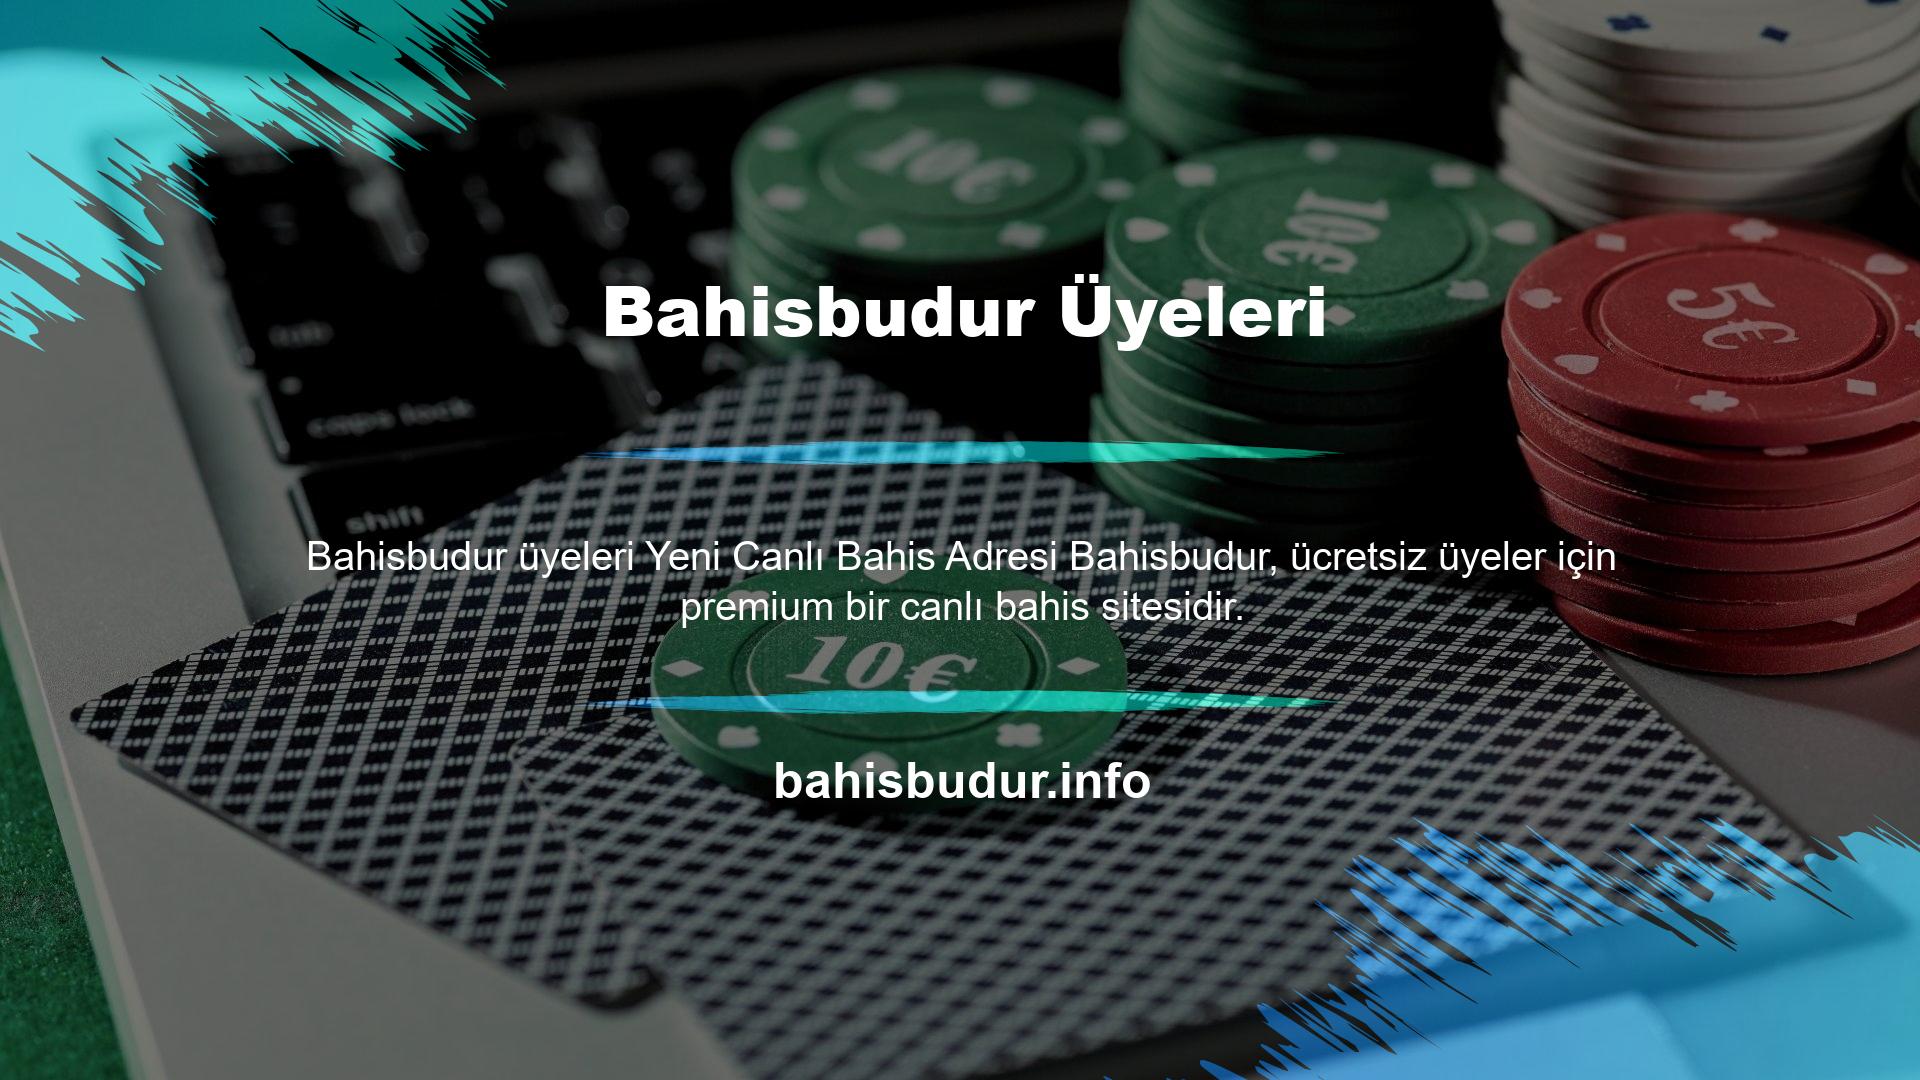 Bahisbudur kayıt ve kayıt işlemleri bu sitede detaylı olarak anlatılmakta olup, 18 yaşından büyük herkes katılabilir